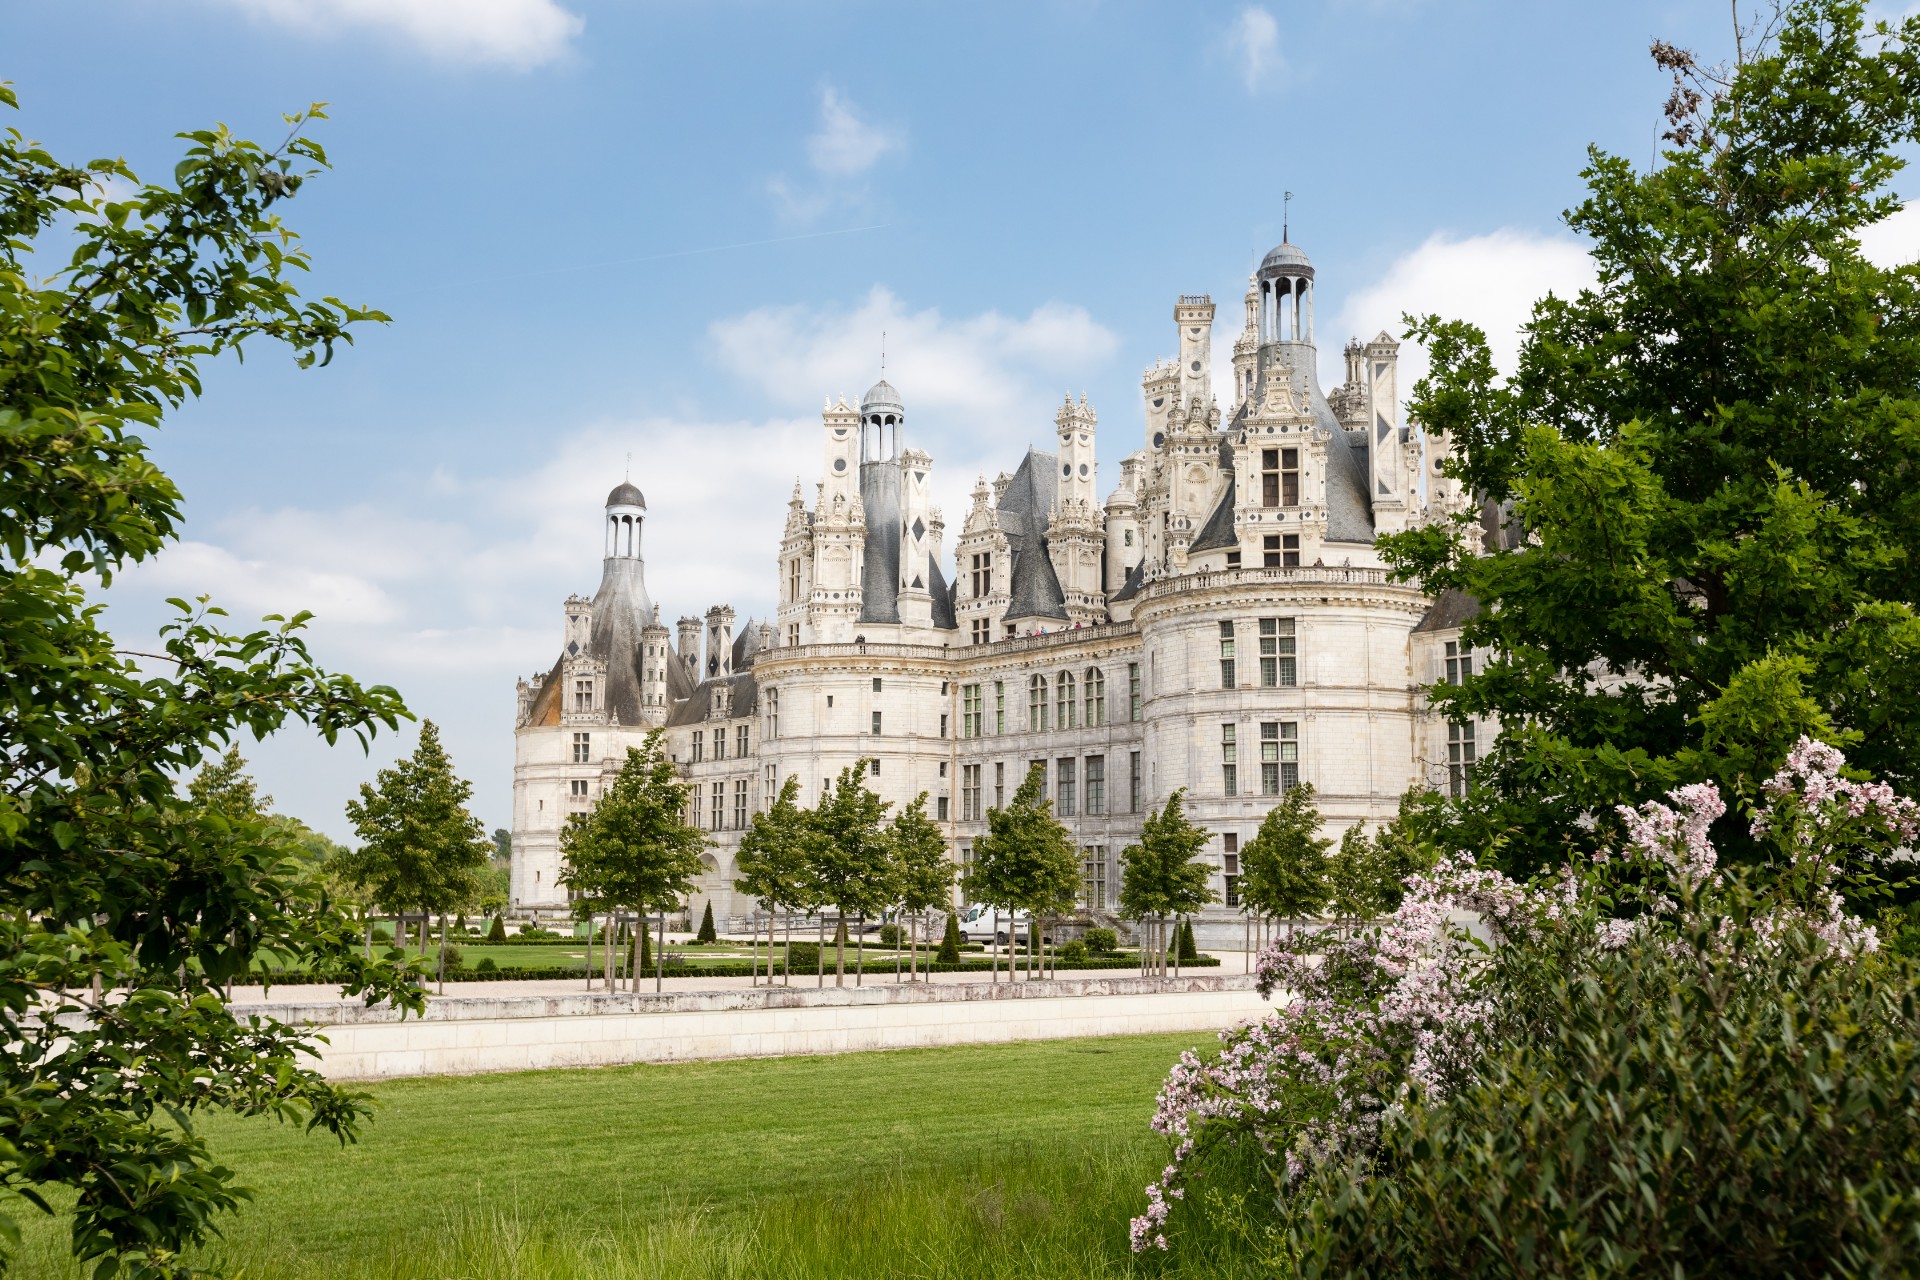 Chateau de Chambord, Loire Valley: Inspired by Leonardo da Vinci